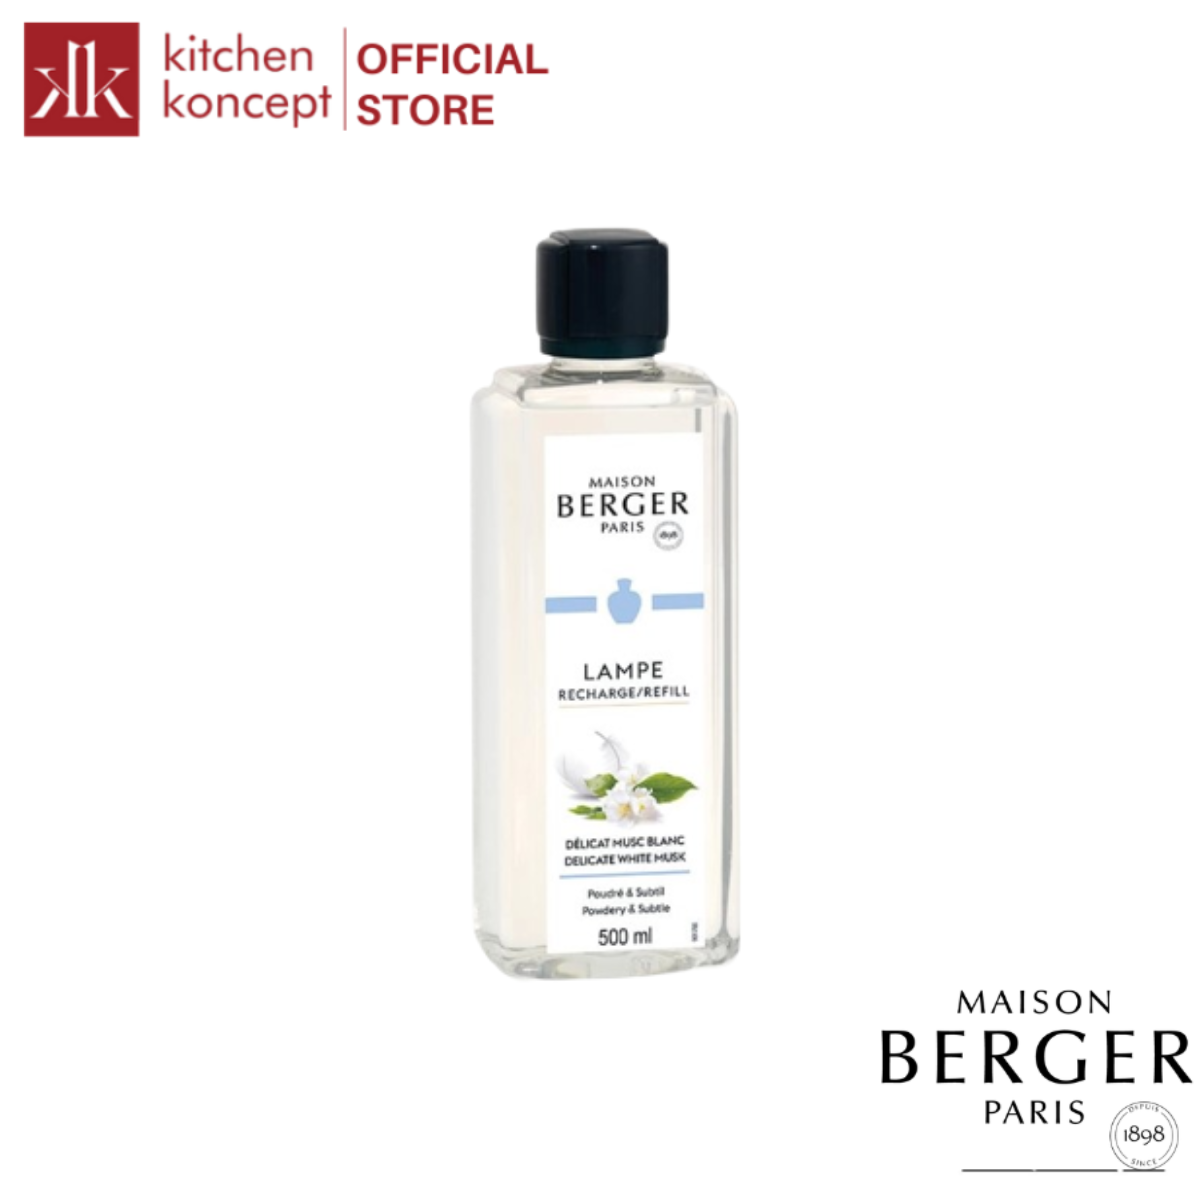 Maison Berger - Tinh dầu đèn xông hương Delicate White Musk - 500ml